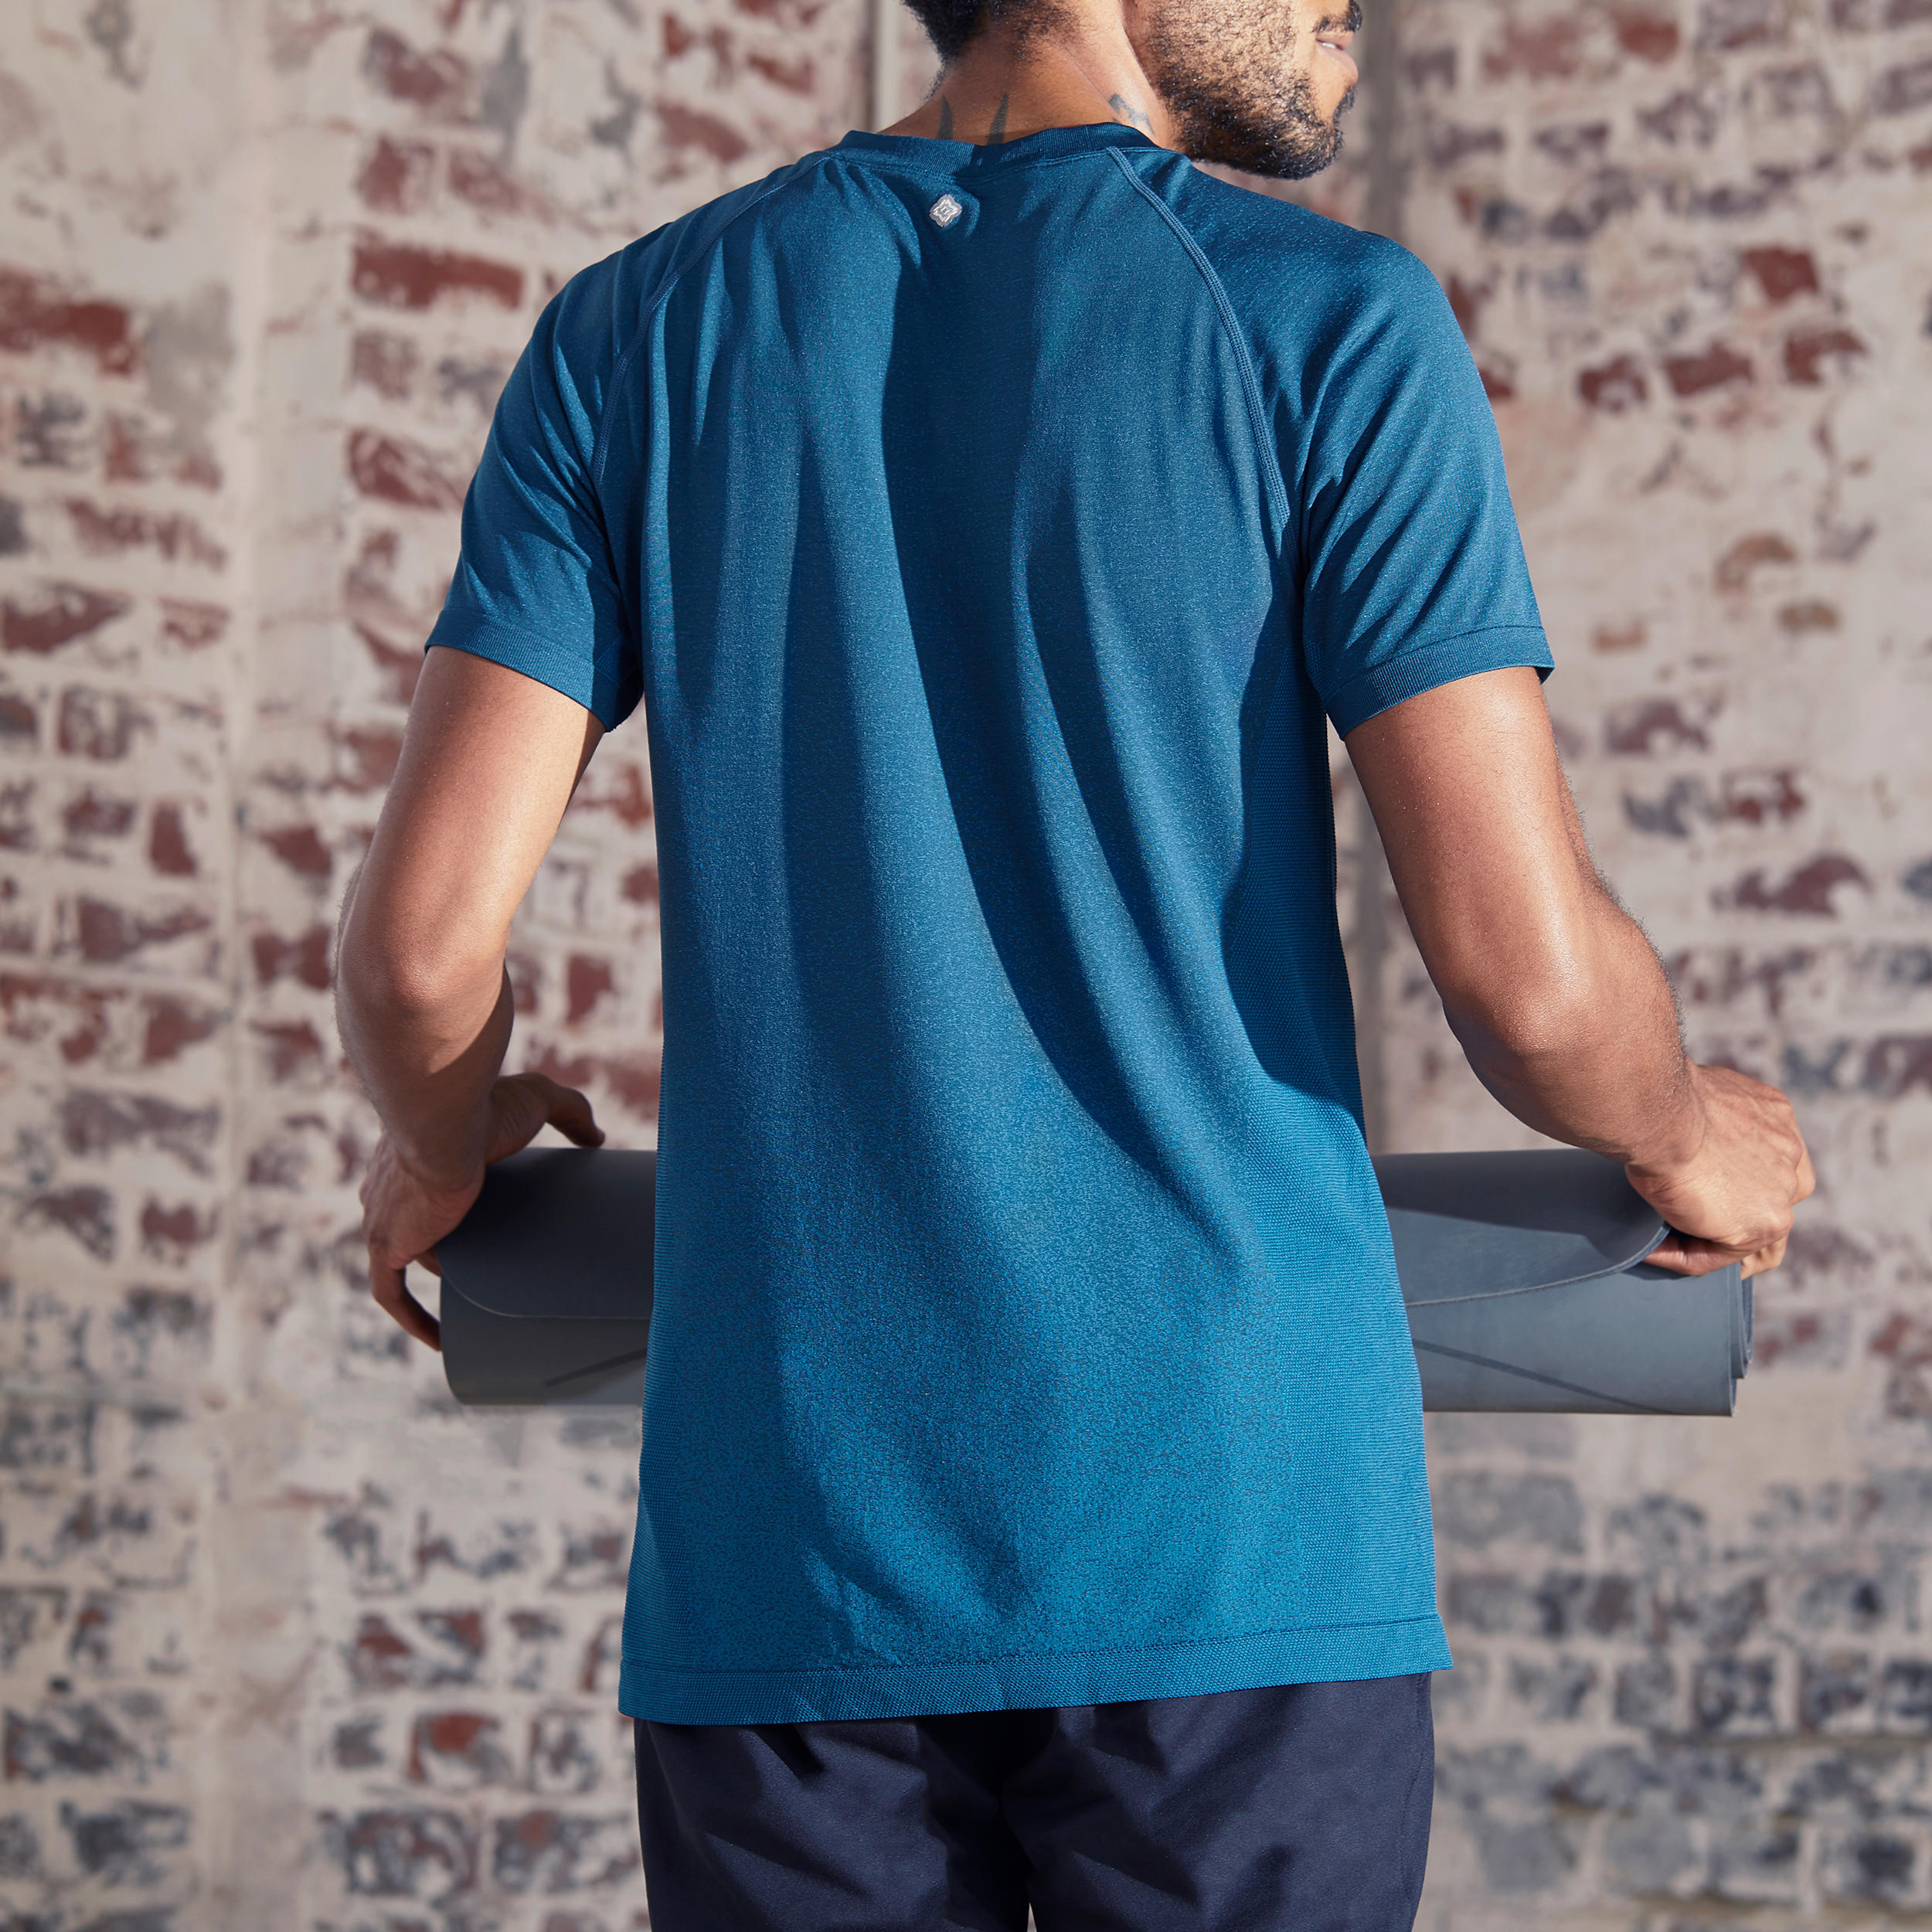 Men's Seamless Short-Sleeved Dynamic Yoga T-Shirt - Light Grey